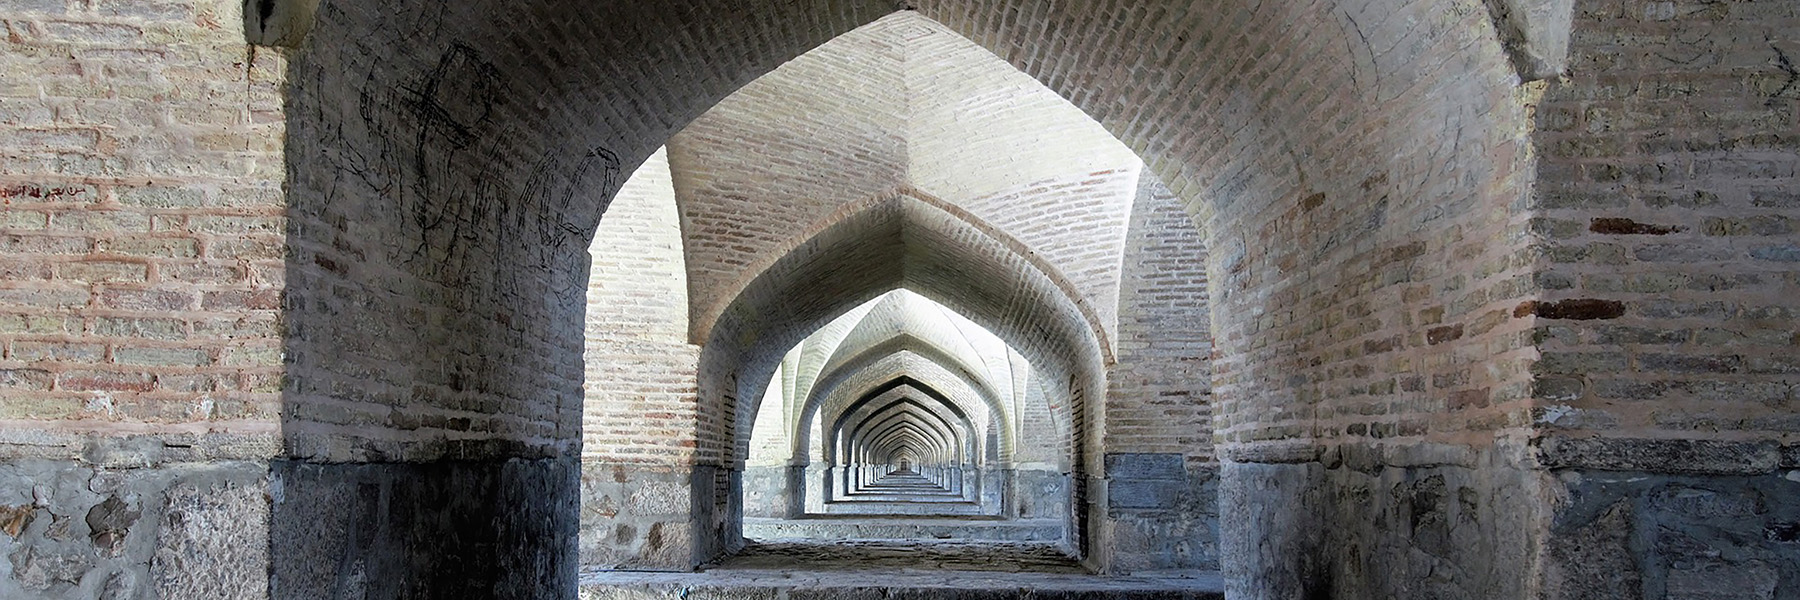 Building hallway in Iran